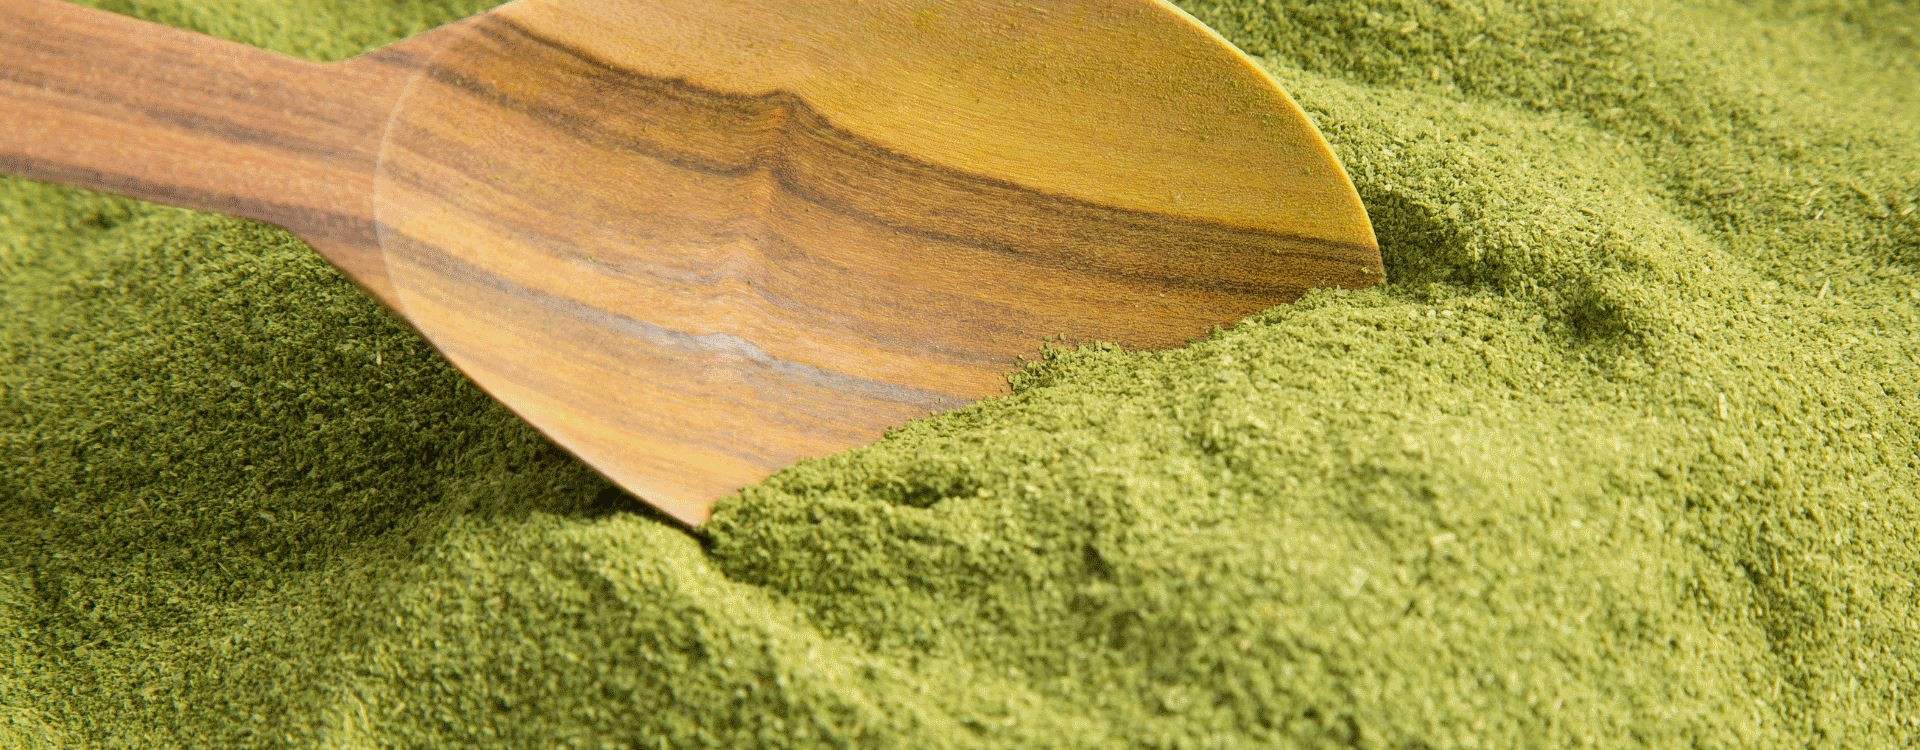 Benefícios do Moringa, uma planta milagrosa por descobrir